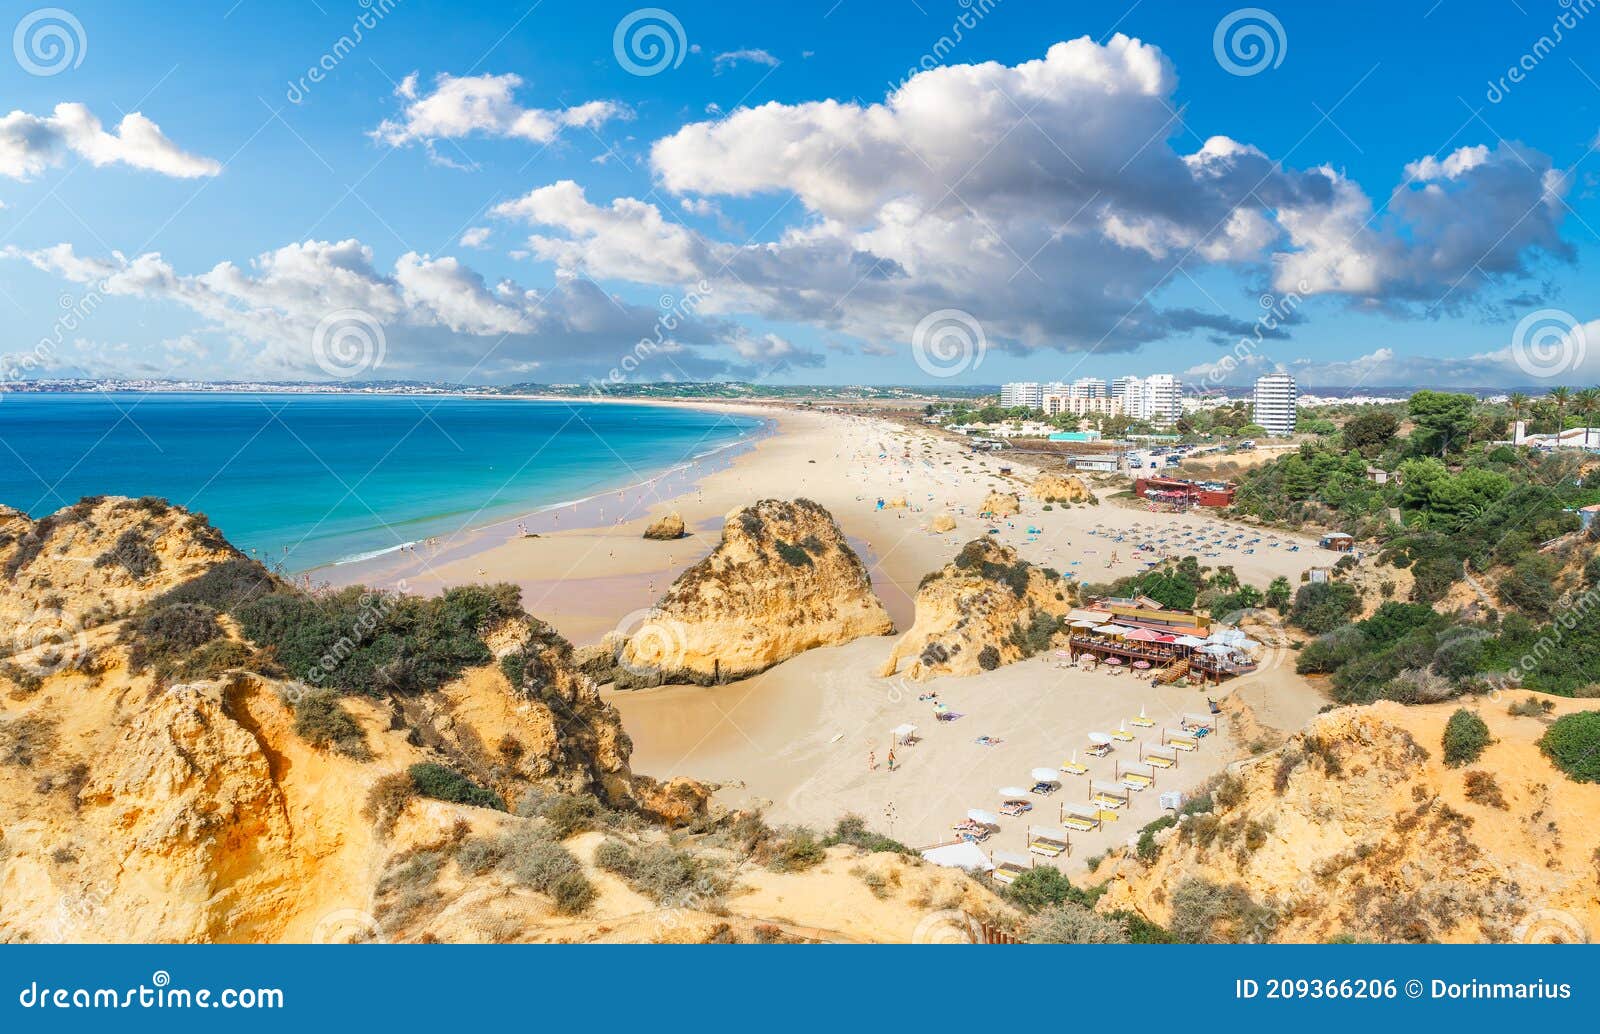 landscape with praia dos tres irmaos